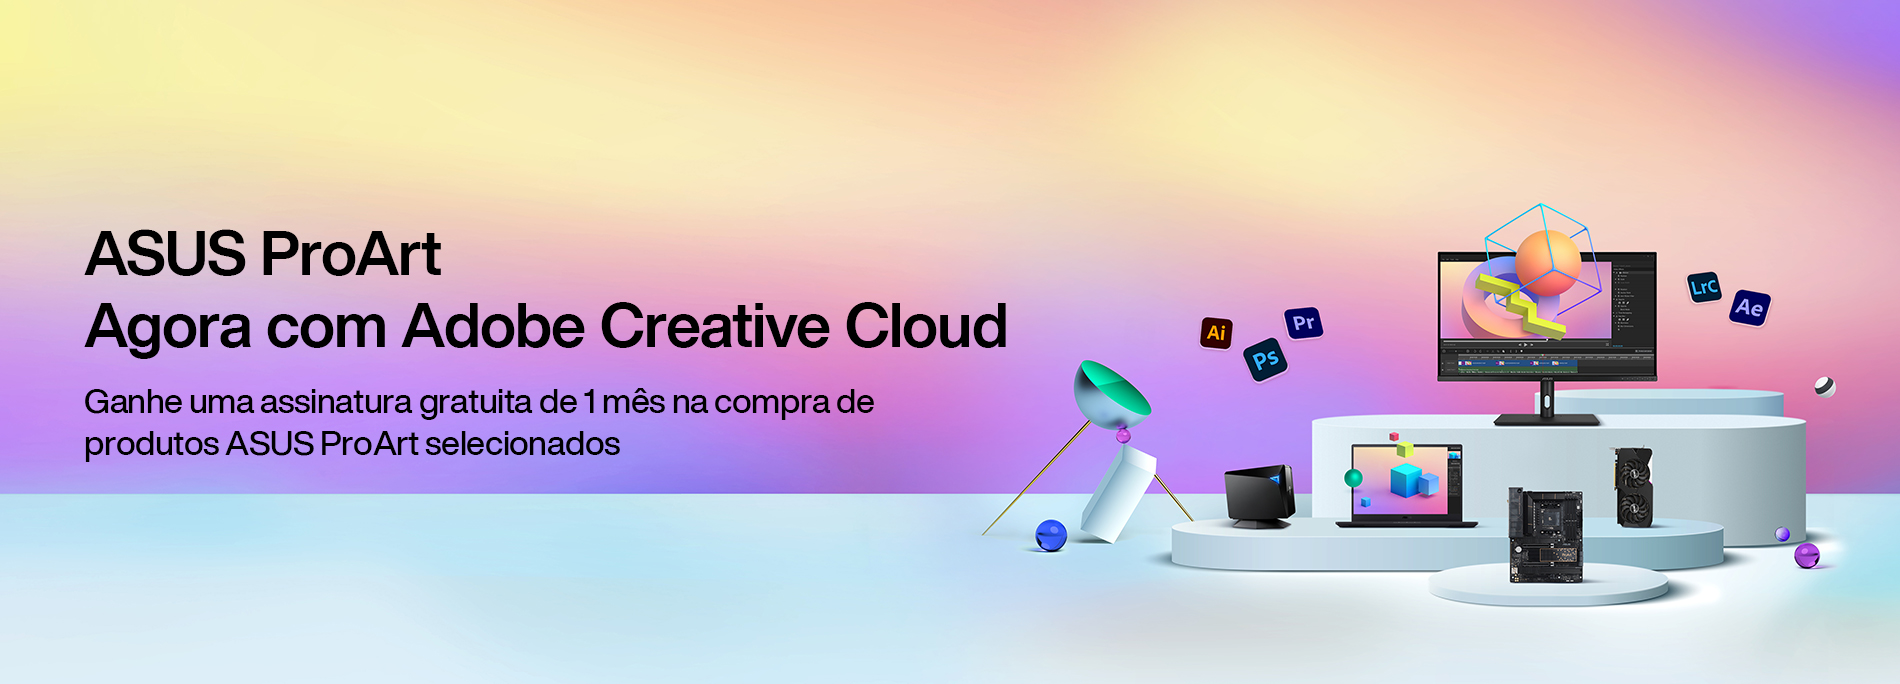 ASUS agora com 1 mês de Adobe Creative Cloud